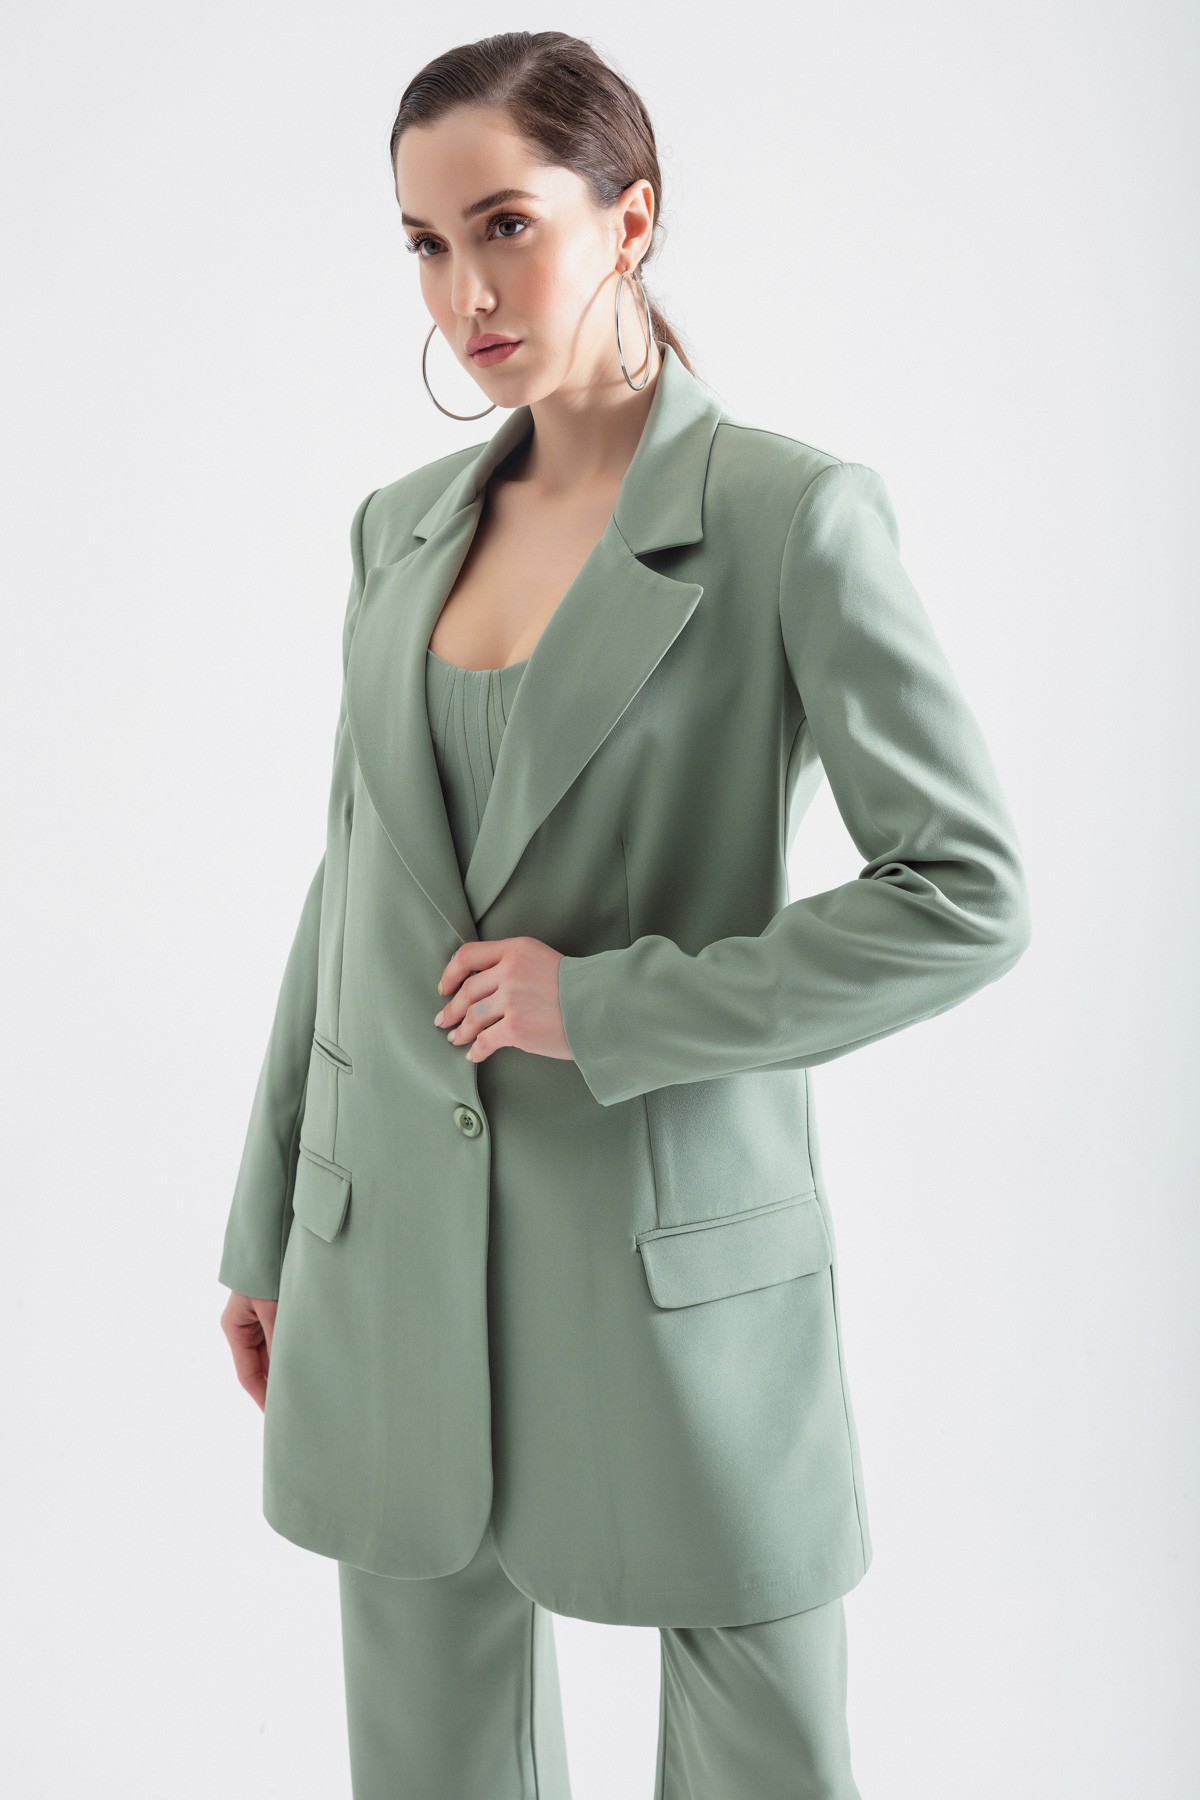 Kadın Düğmeli Blazer Ceket - Mint Yeşili